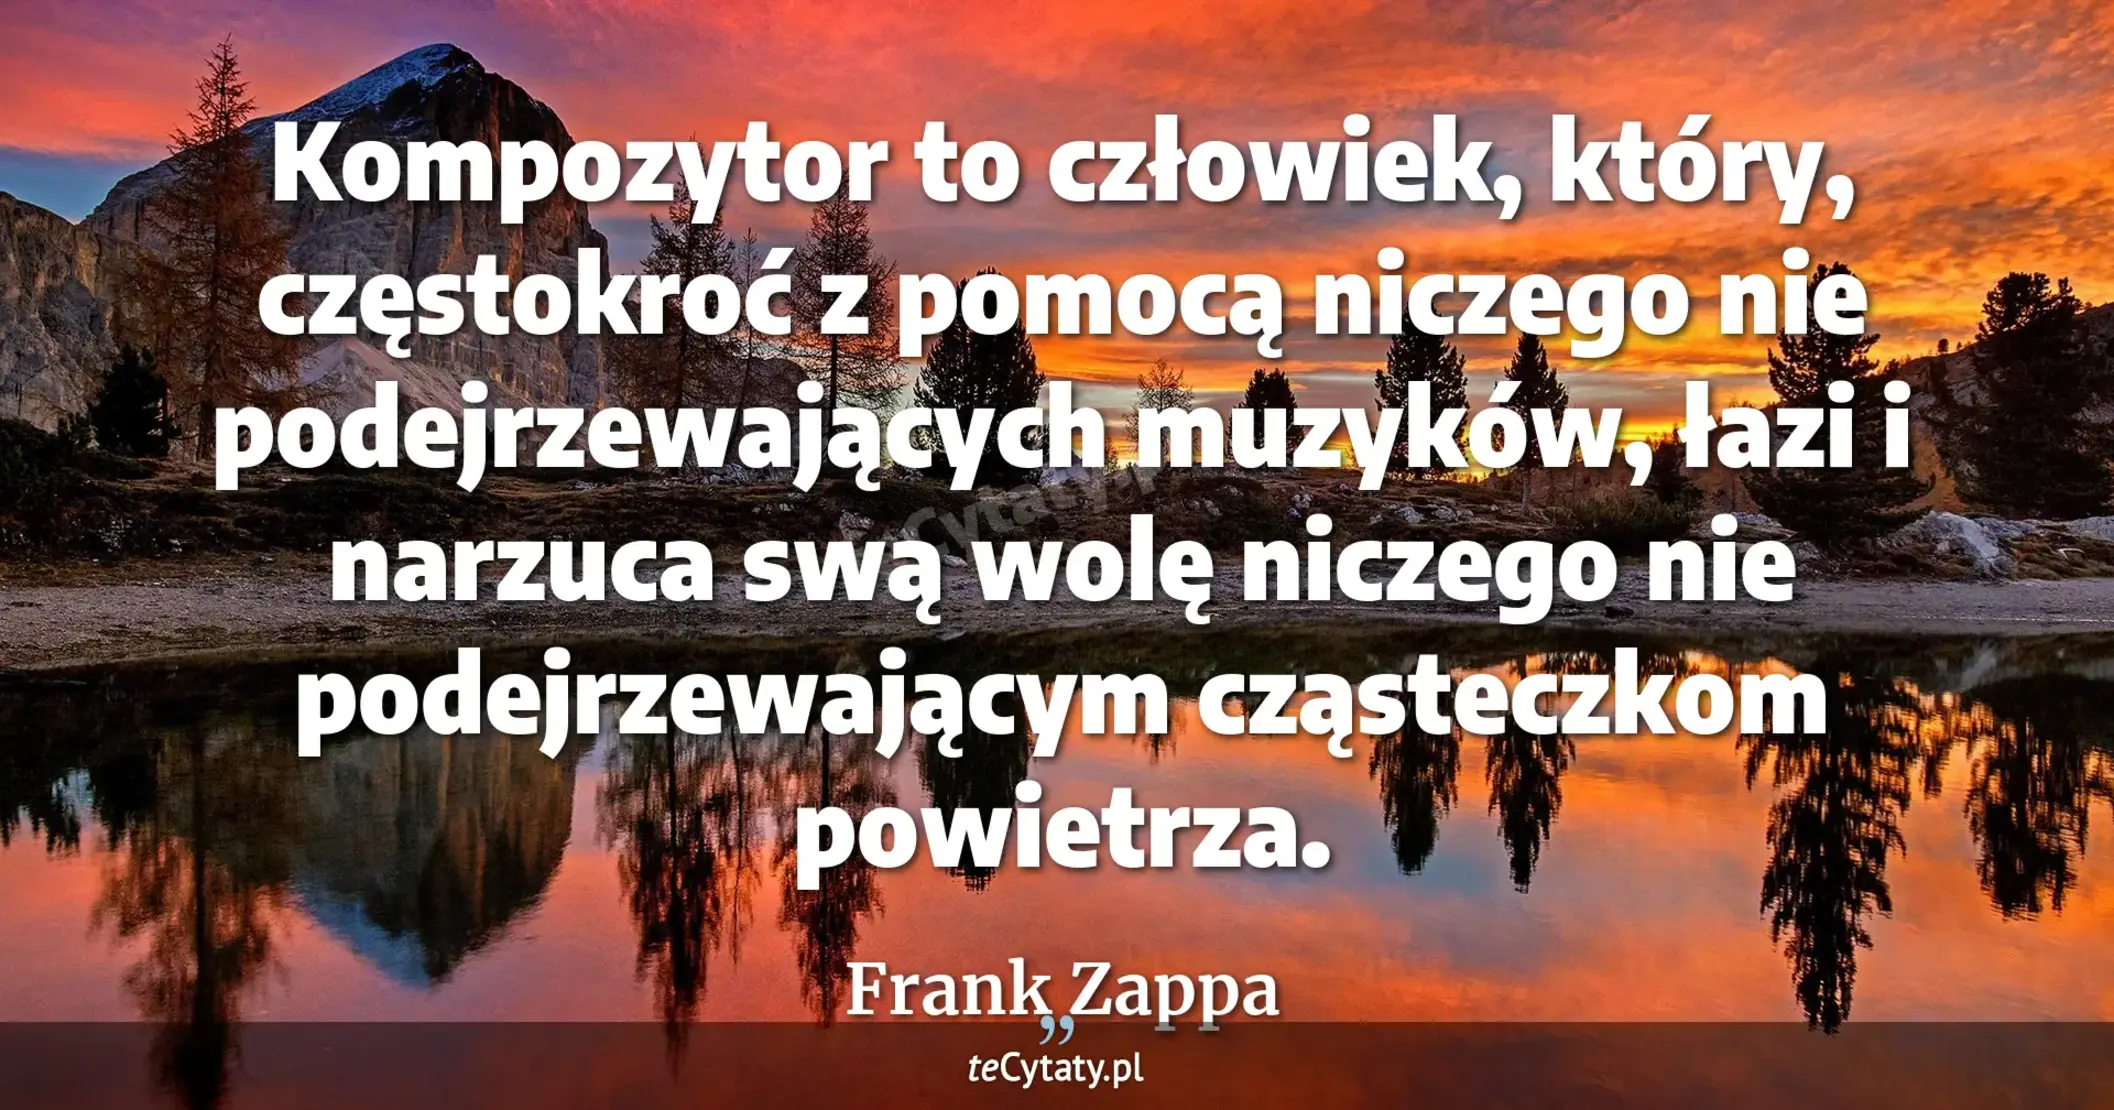 Kompozytor to człowiek, który, częstokroć z pomocą niczego nie podejrzewających muzyków, łazi i narzuca swą wolę niczego nie podejrzewającym cząsteczkom powietrza. - Frank Zappa